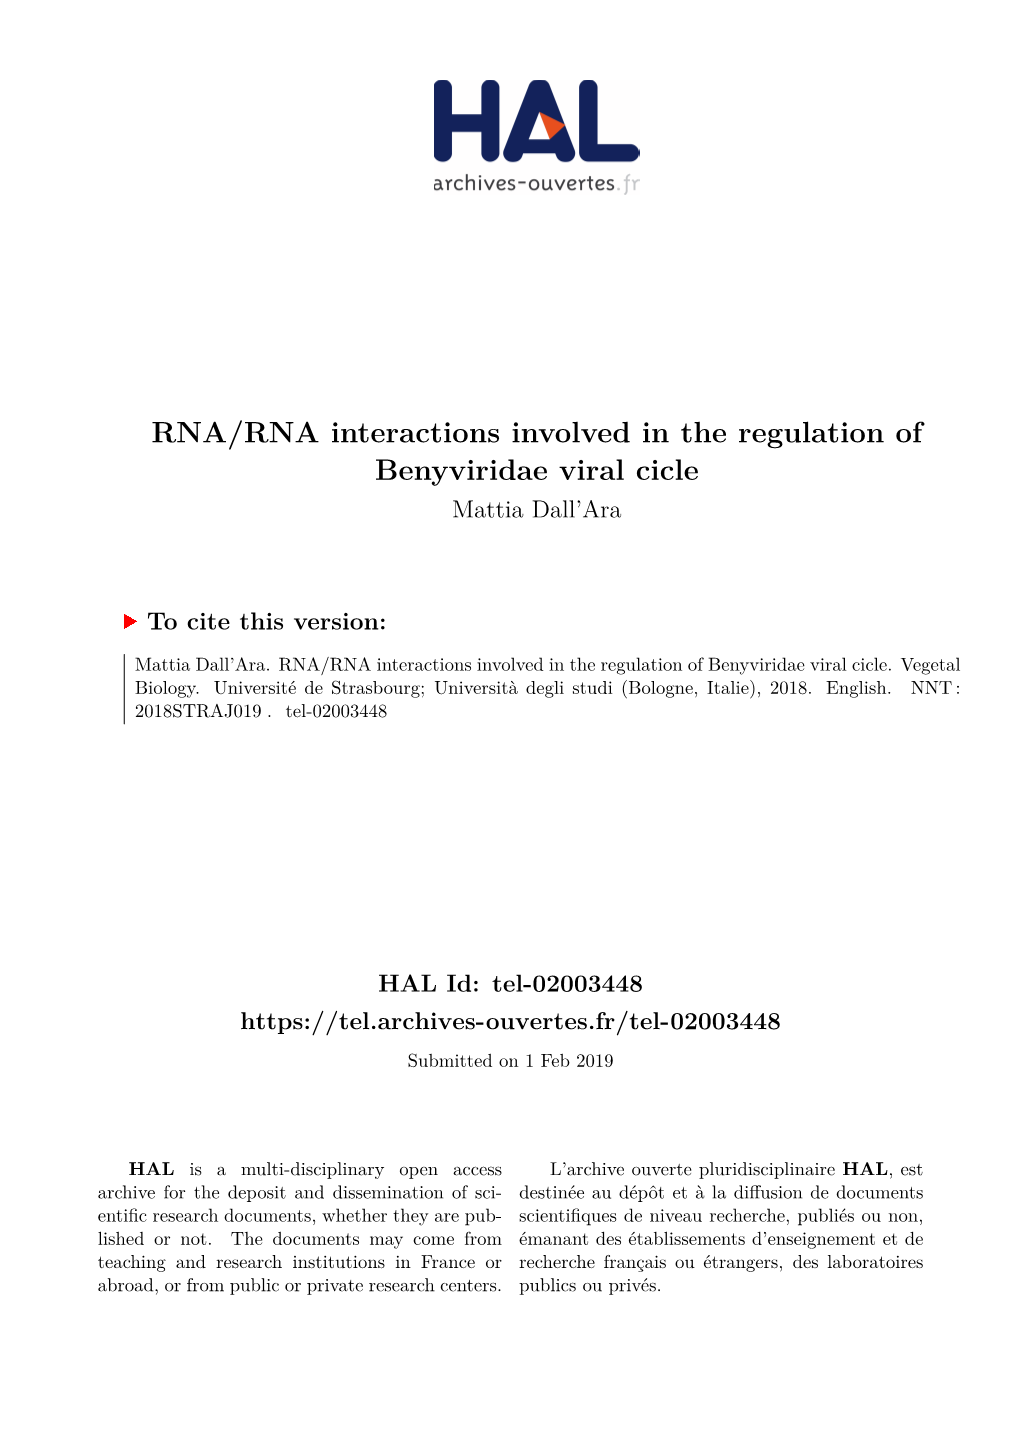 RNA/RNA Interactions Involved in the Regulation of Benyviridae Viral Cicle Mattia Dall’Ara